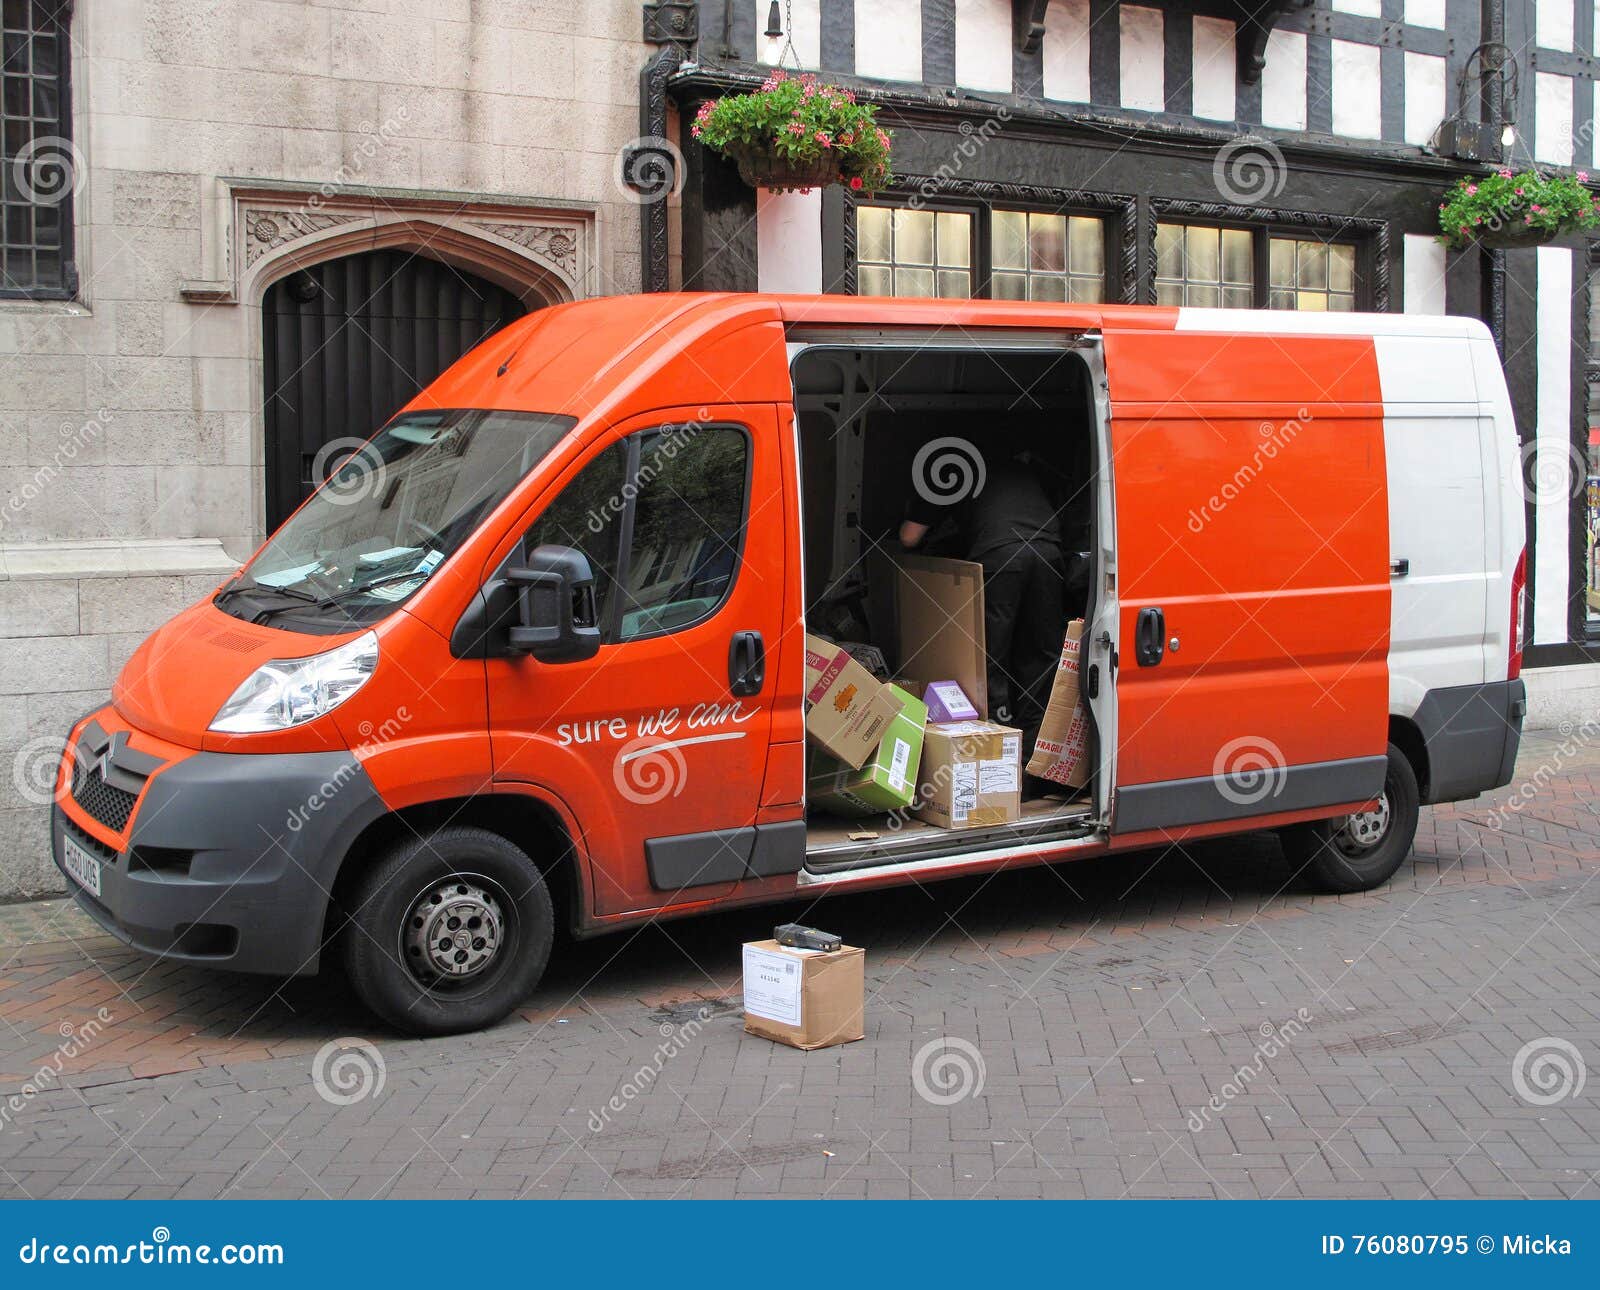 tnt delivery vans